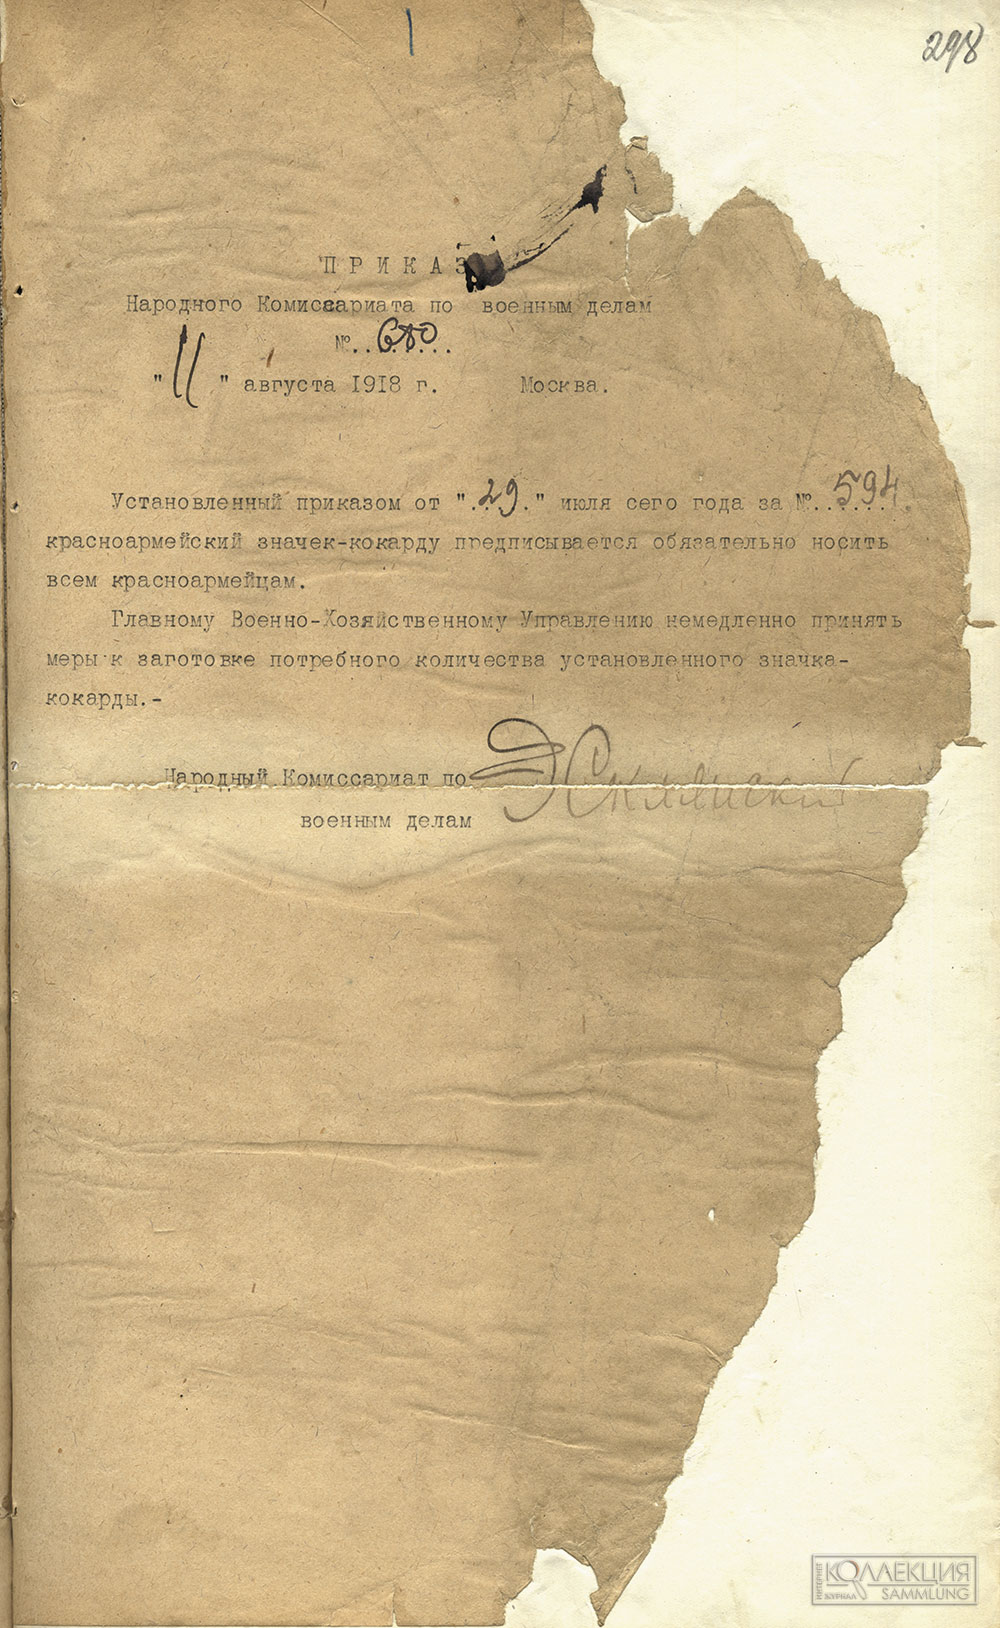 Подлинник приказа Наркомвоена от 11 августа 1918 г. № 680 (РГВА. Ф. 4 Оп. 12с. Д. 2 Л. 298)